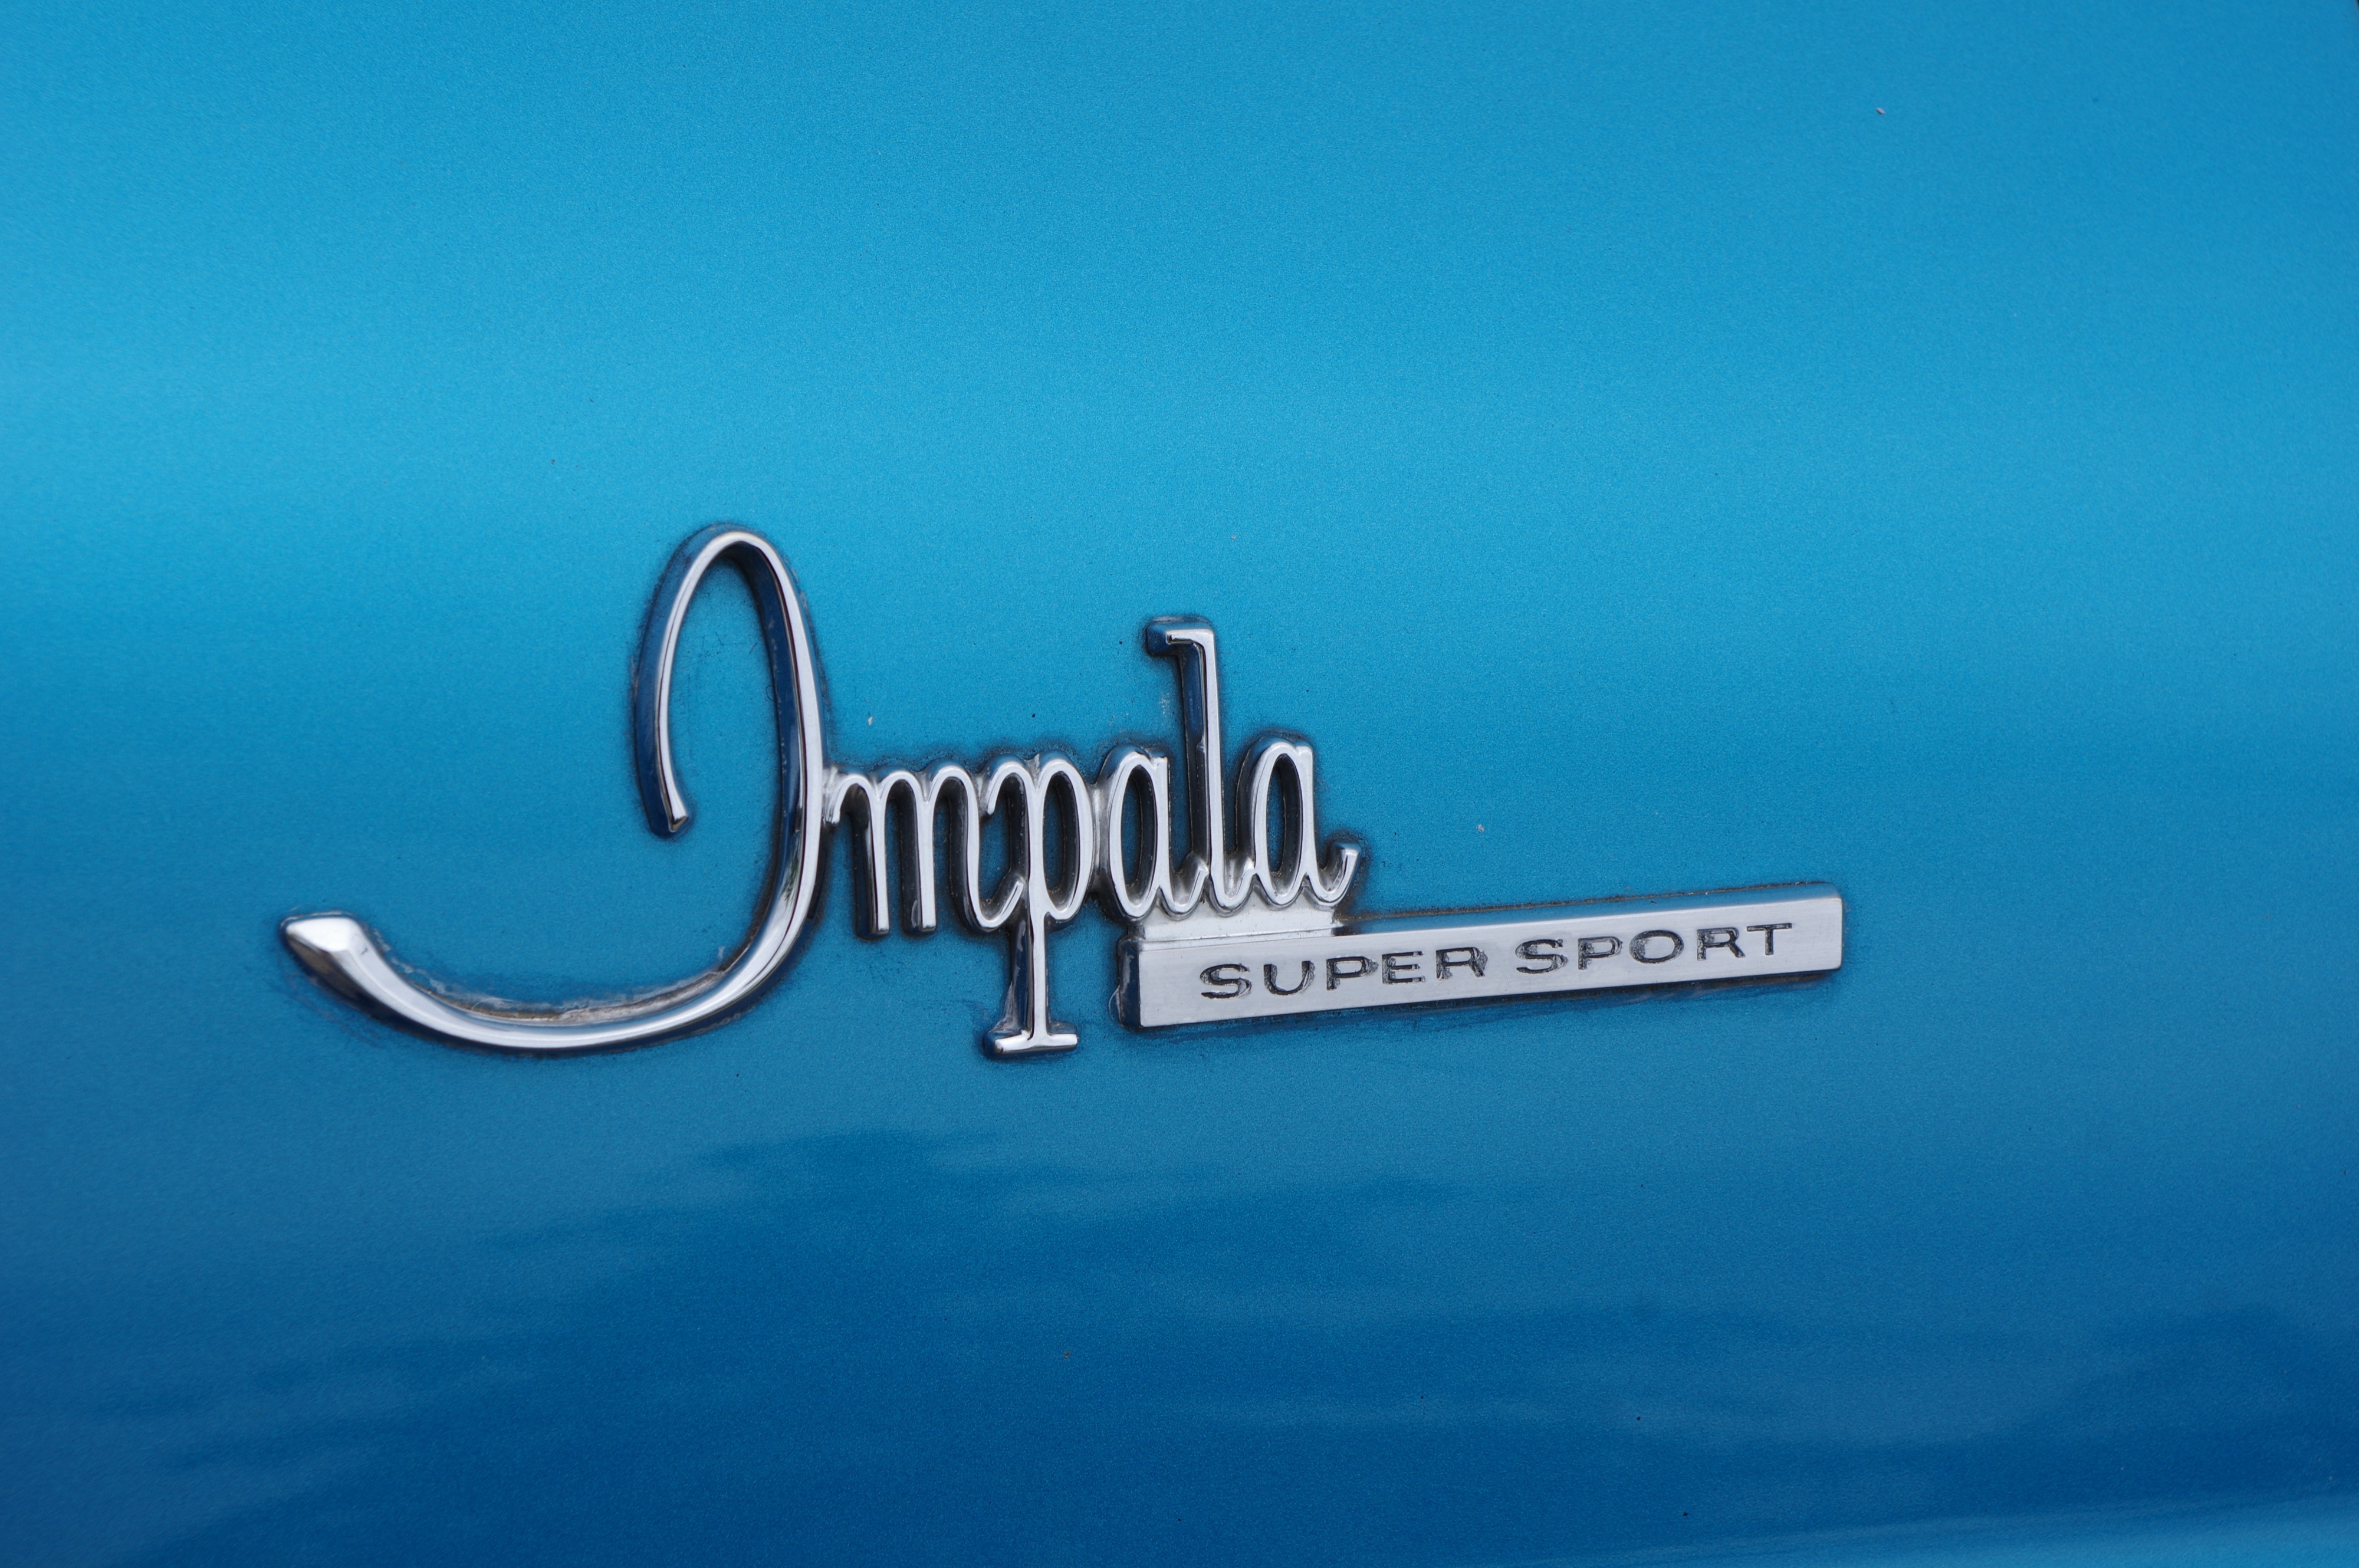 Chevrolet Impala BW 2017-07-16 12-47-09